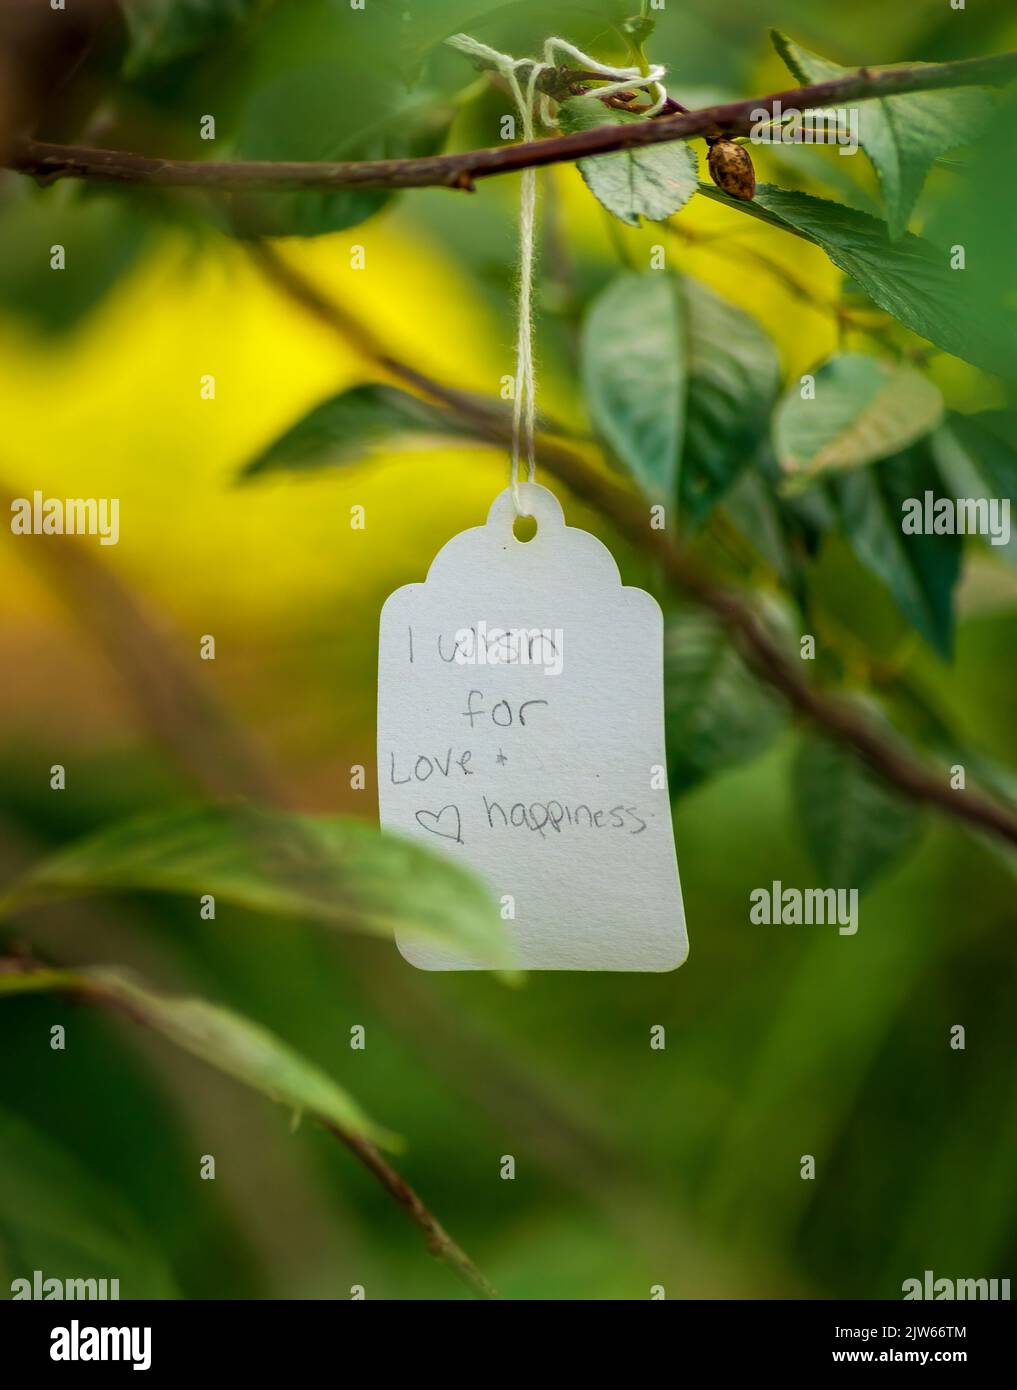 « Je souhaite l’amour et le bonheur » – un souhait écrit sur une étiquette en papier et attaché à une brindille sur l’arbre à souhaits, au jardin botanique Berkshire. Stockbridge, ma. Banque D'Images